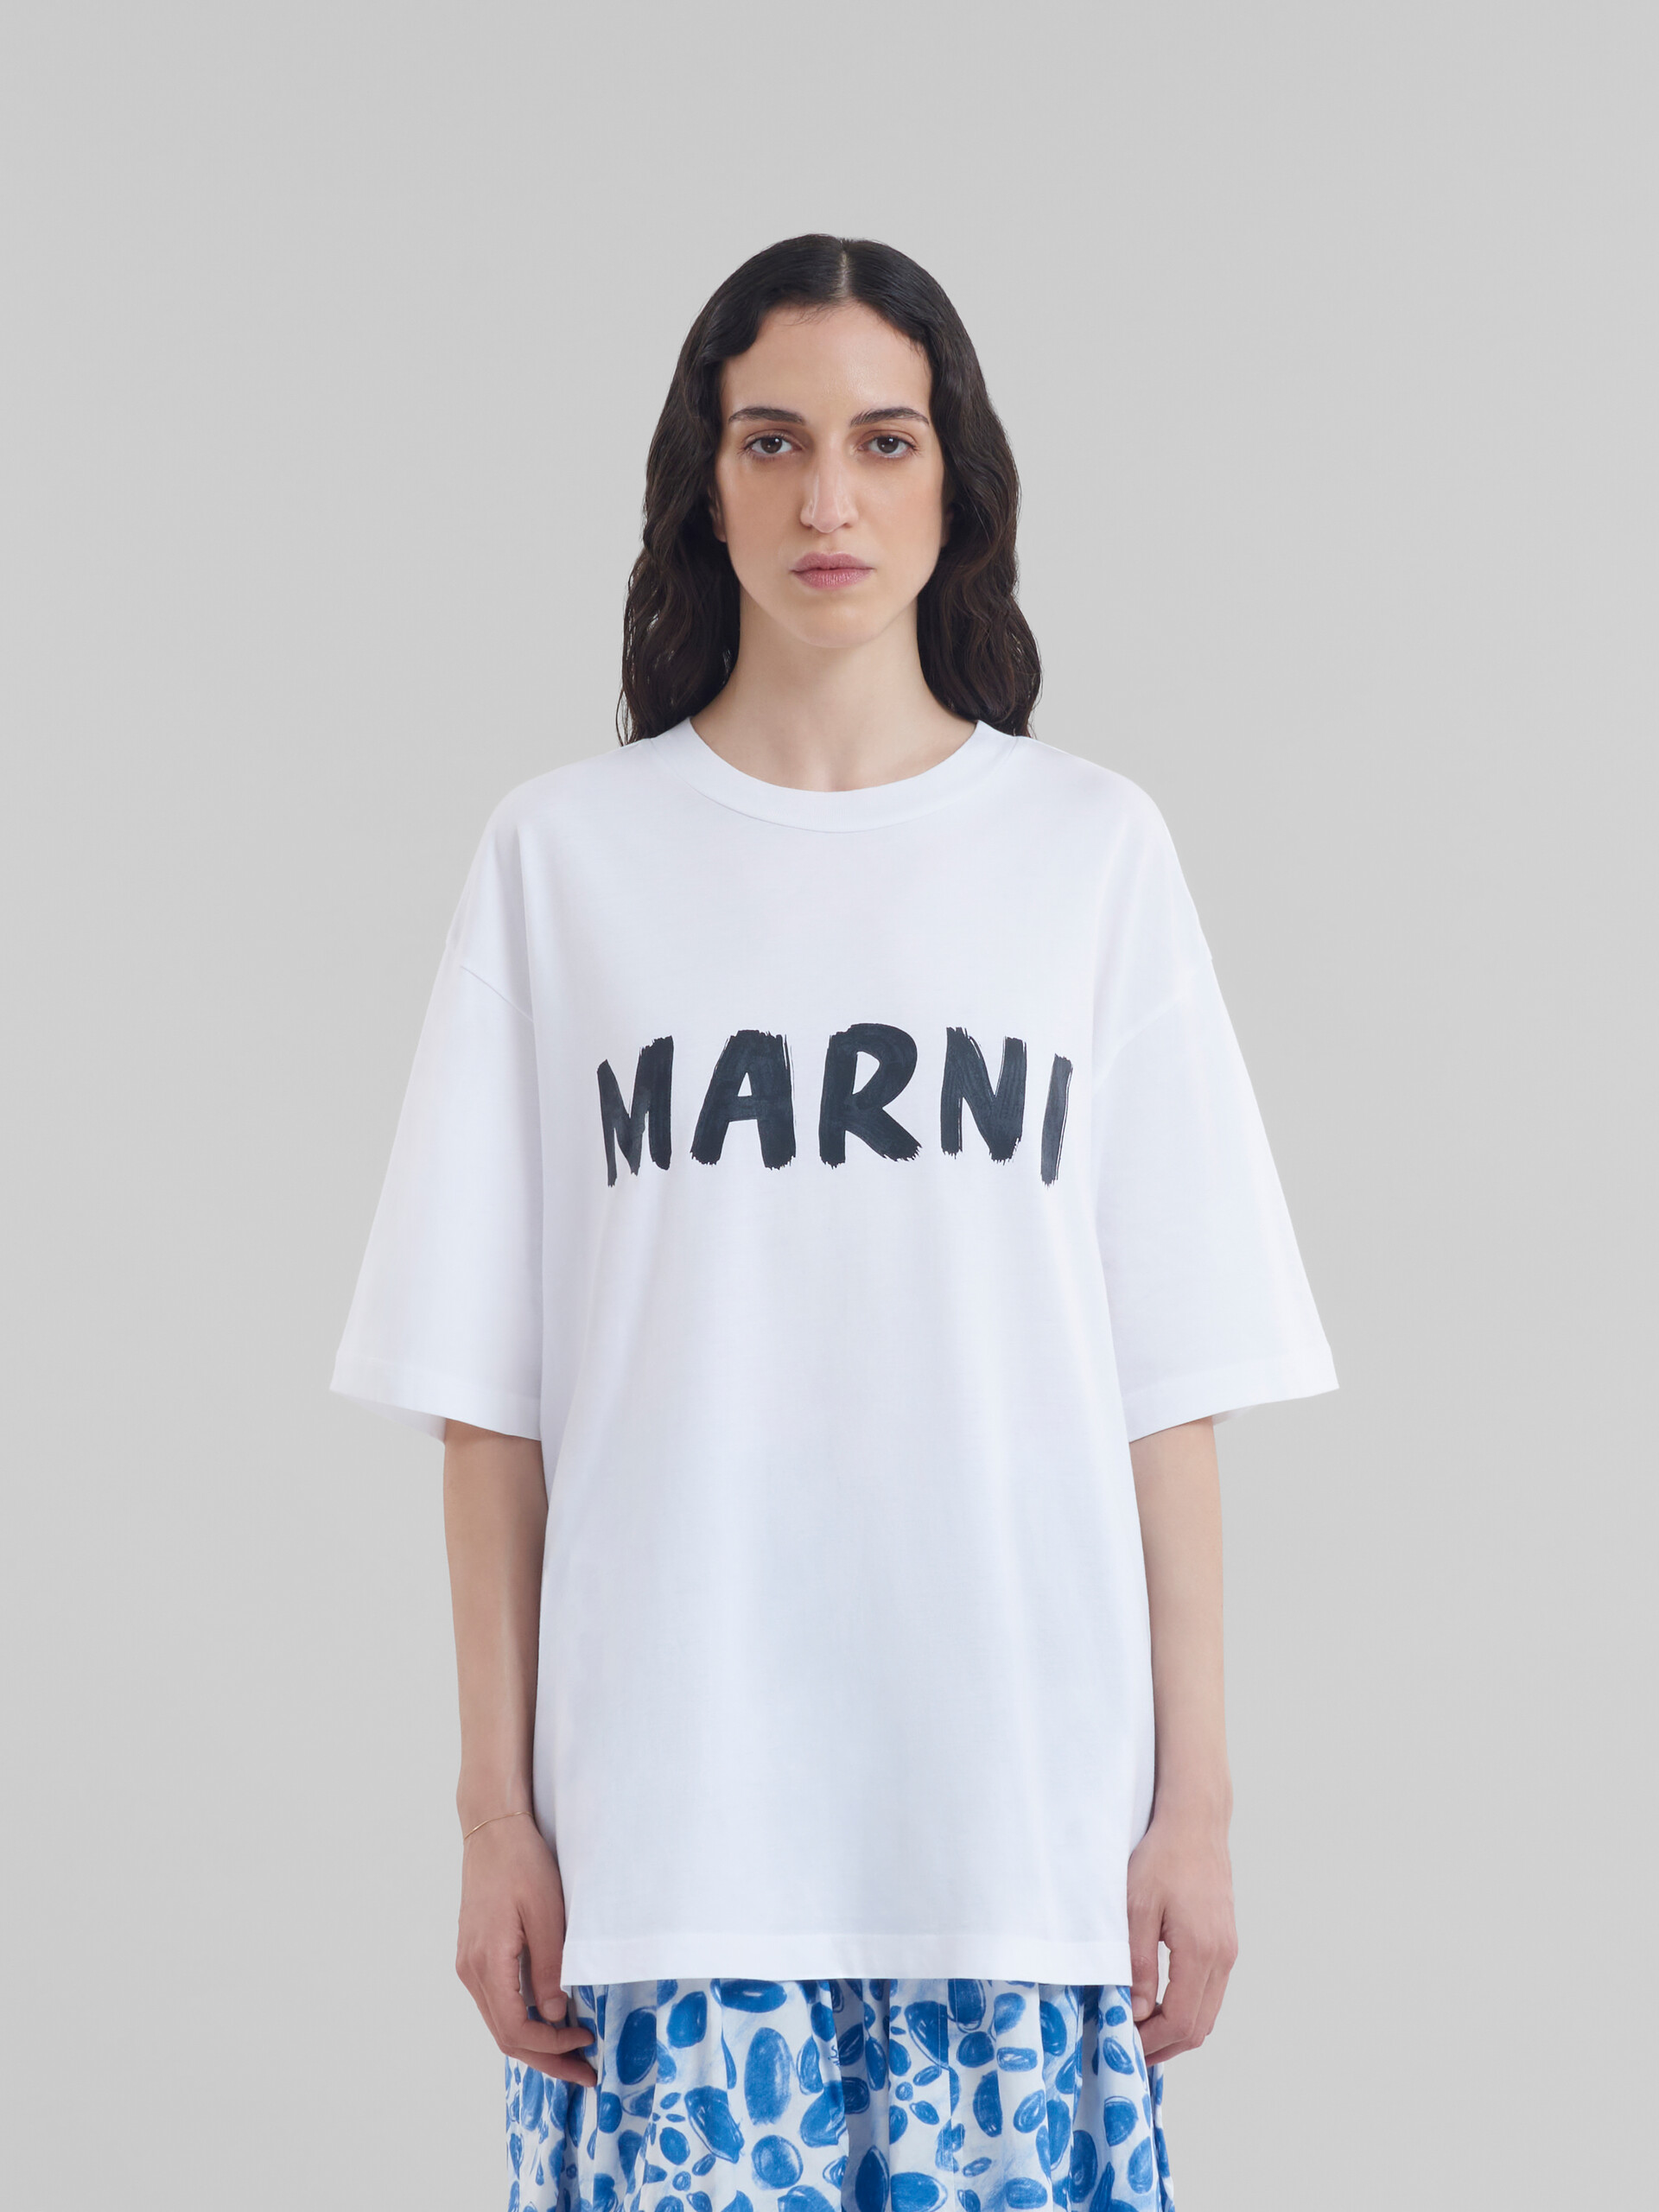 MARNI マルニ Tシャツ バックプリントTシャツ